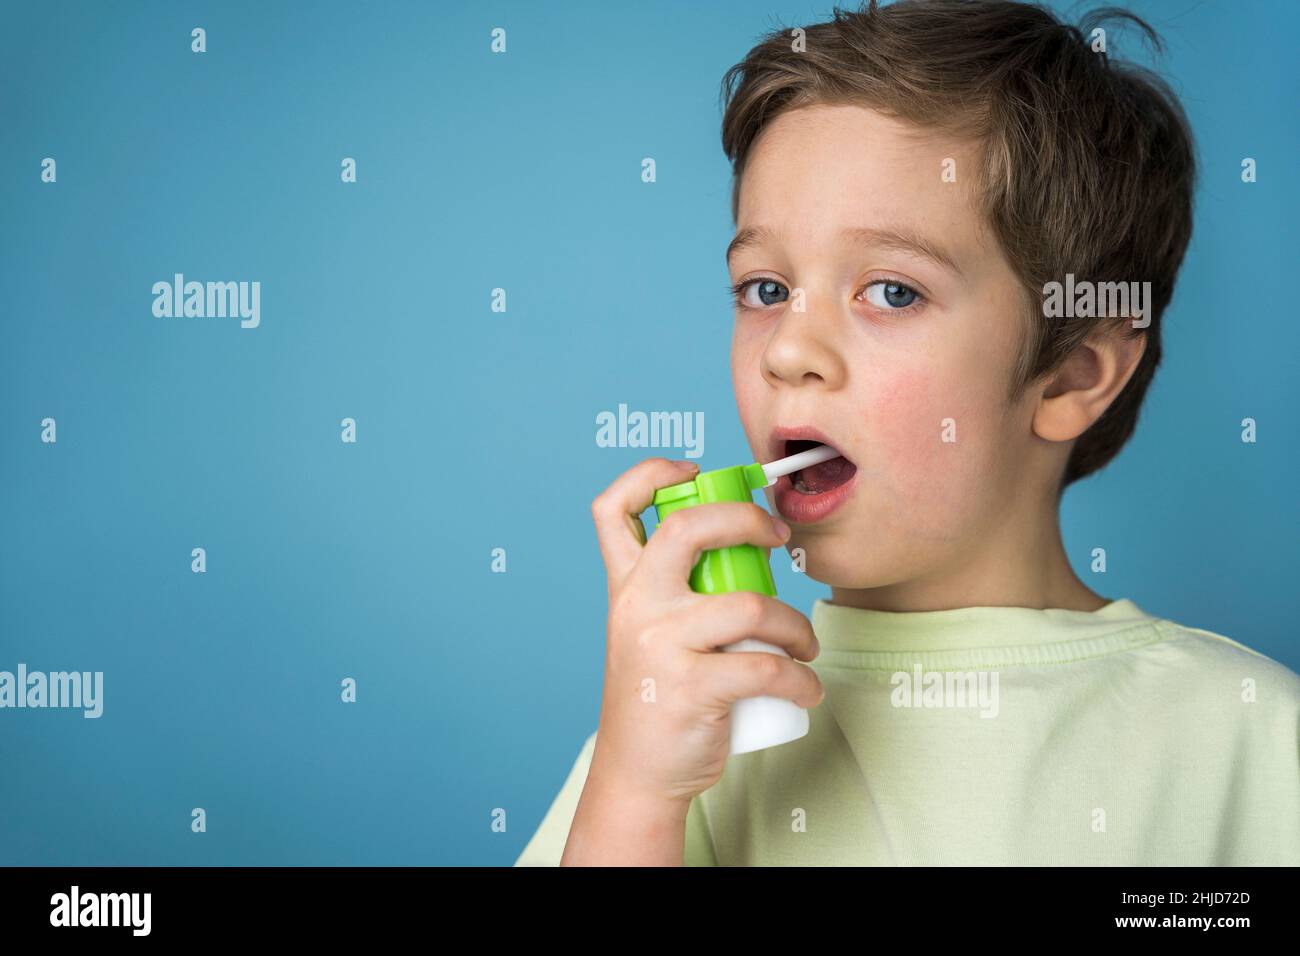 Ein süßer kaukasischer Junge in einem gelben T-Shirt sprüht ein Aerosol in seinen Mund, um Halsschmerzen zu behandeln, ein Spray für die topische Anwendung. Aerosol-Inhalator. Blaue Rückseite Stockfoto